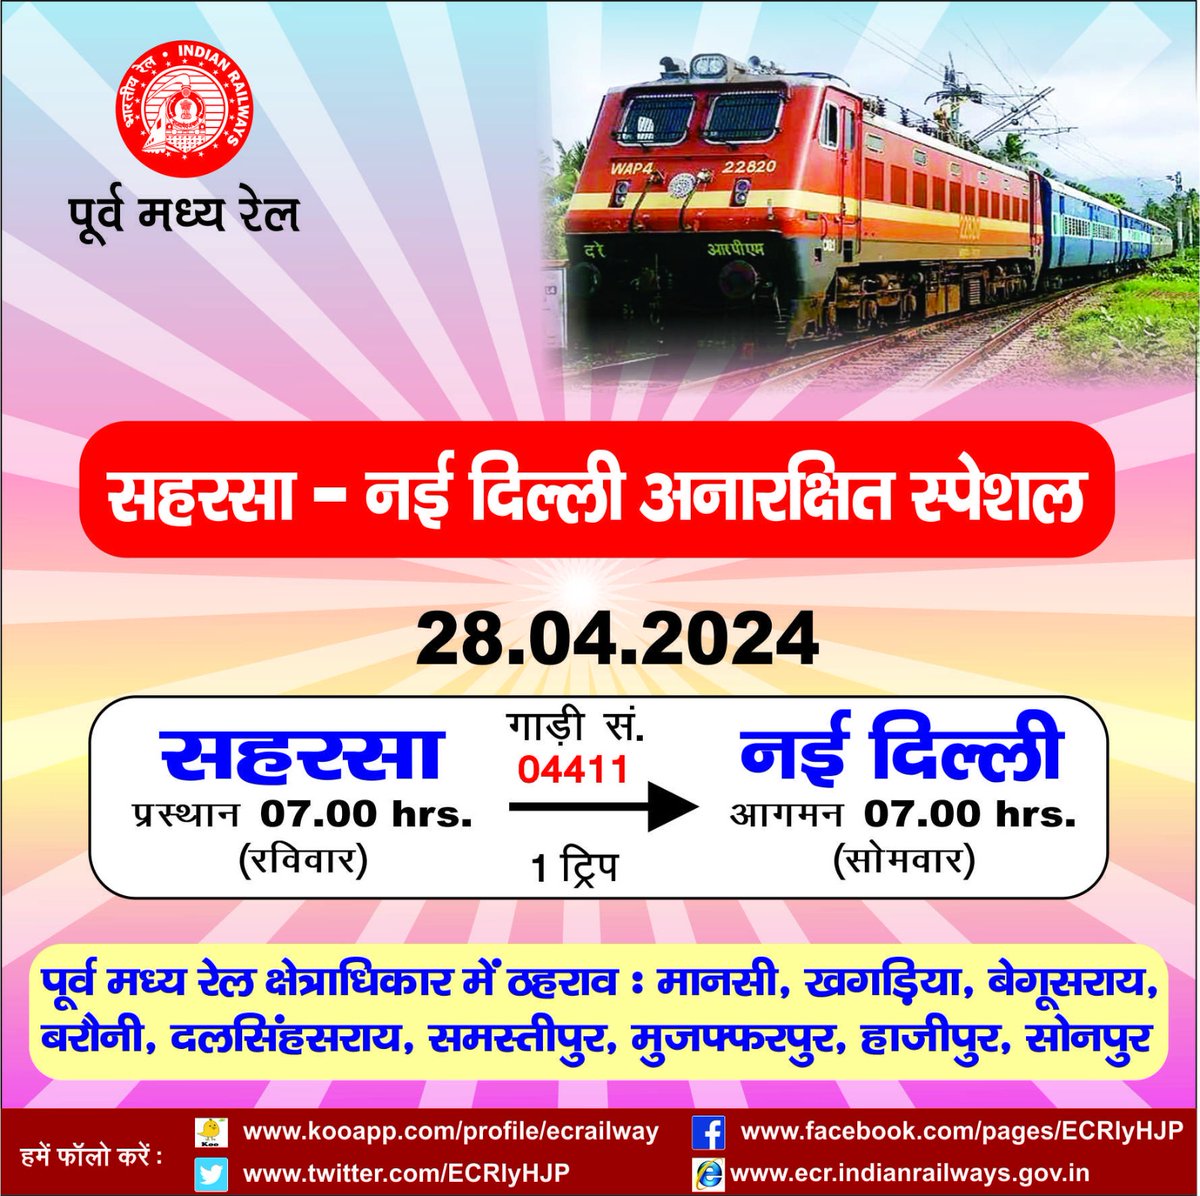 रेलयात्रियों की सुविधा के लिए कल दिनाँक 28.04.2024 को सहरसा से नई दिल्ली के लिए गाड़ी संख्या 04411 सहरसा-नई दिल्ली स्पेशल ट्रेन का परिचालन किया जायेगा। #SummerSpecialTrain